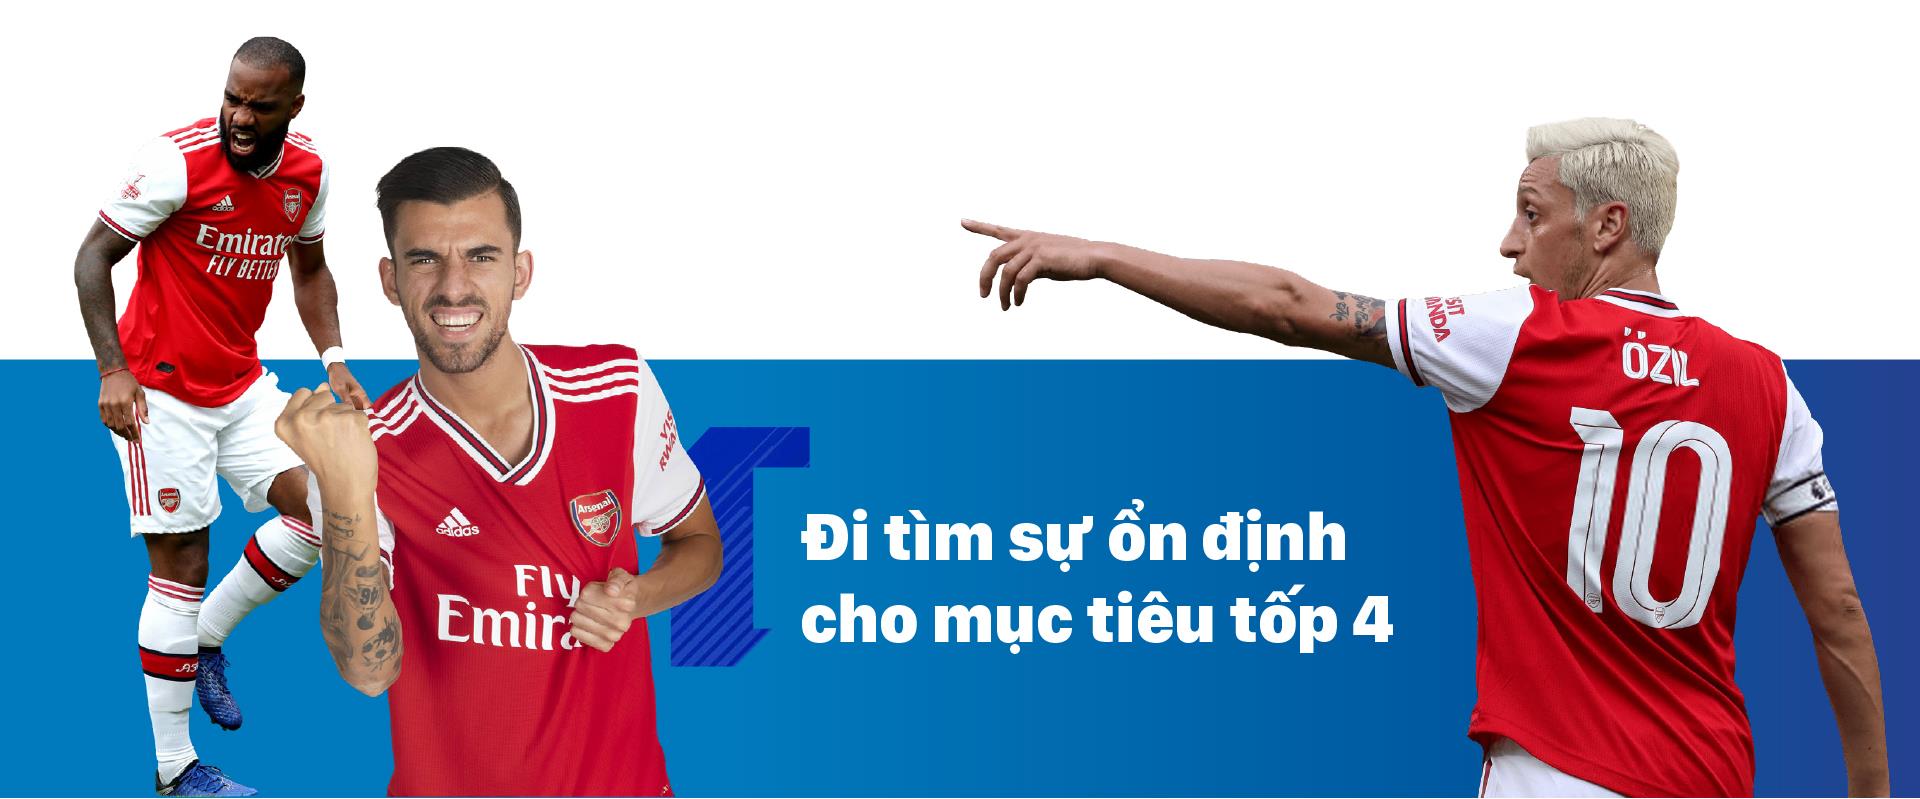 Chân dung 6 đại gia Ngoại hạng Anh: Arsenal - Mùa thứ 2 của Unai Emery ảnh 4